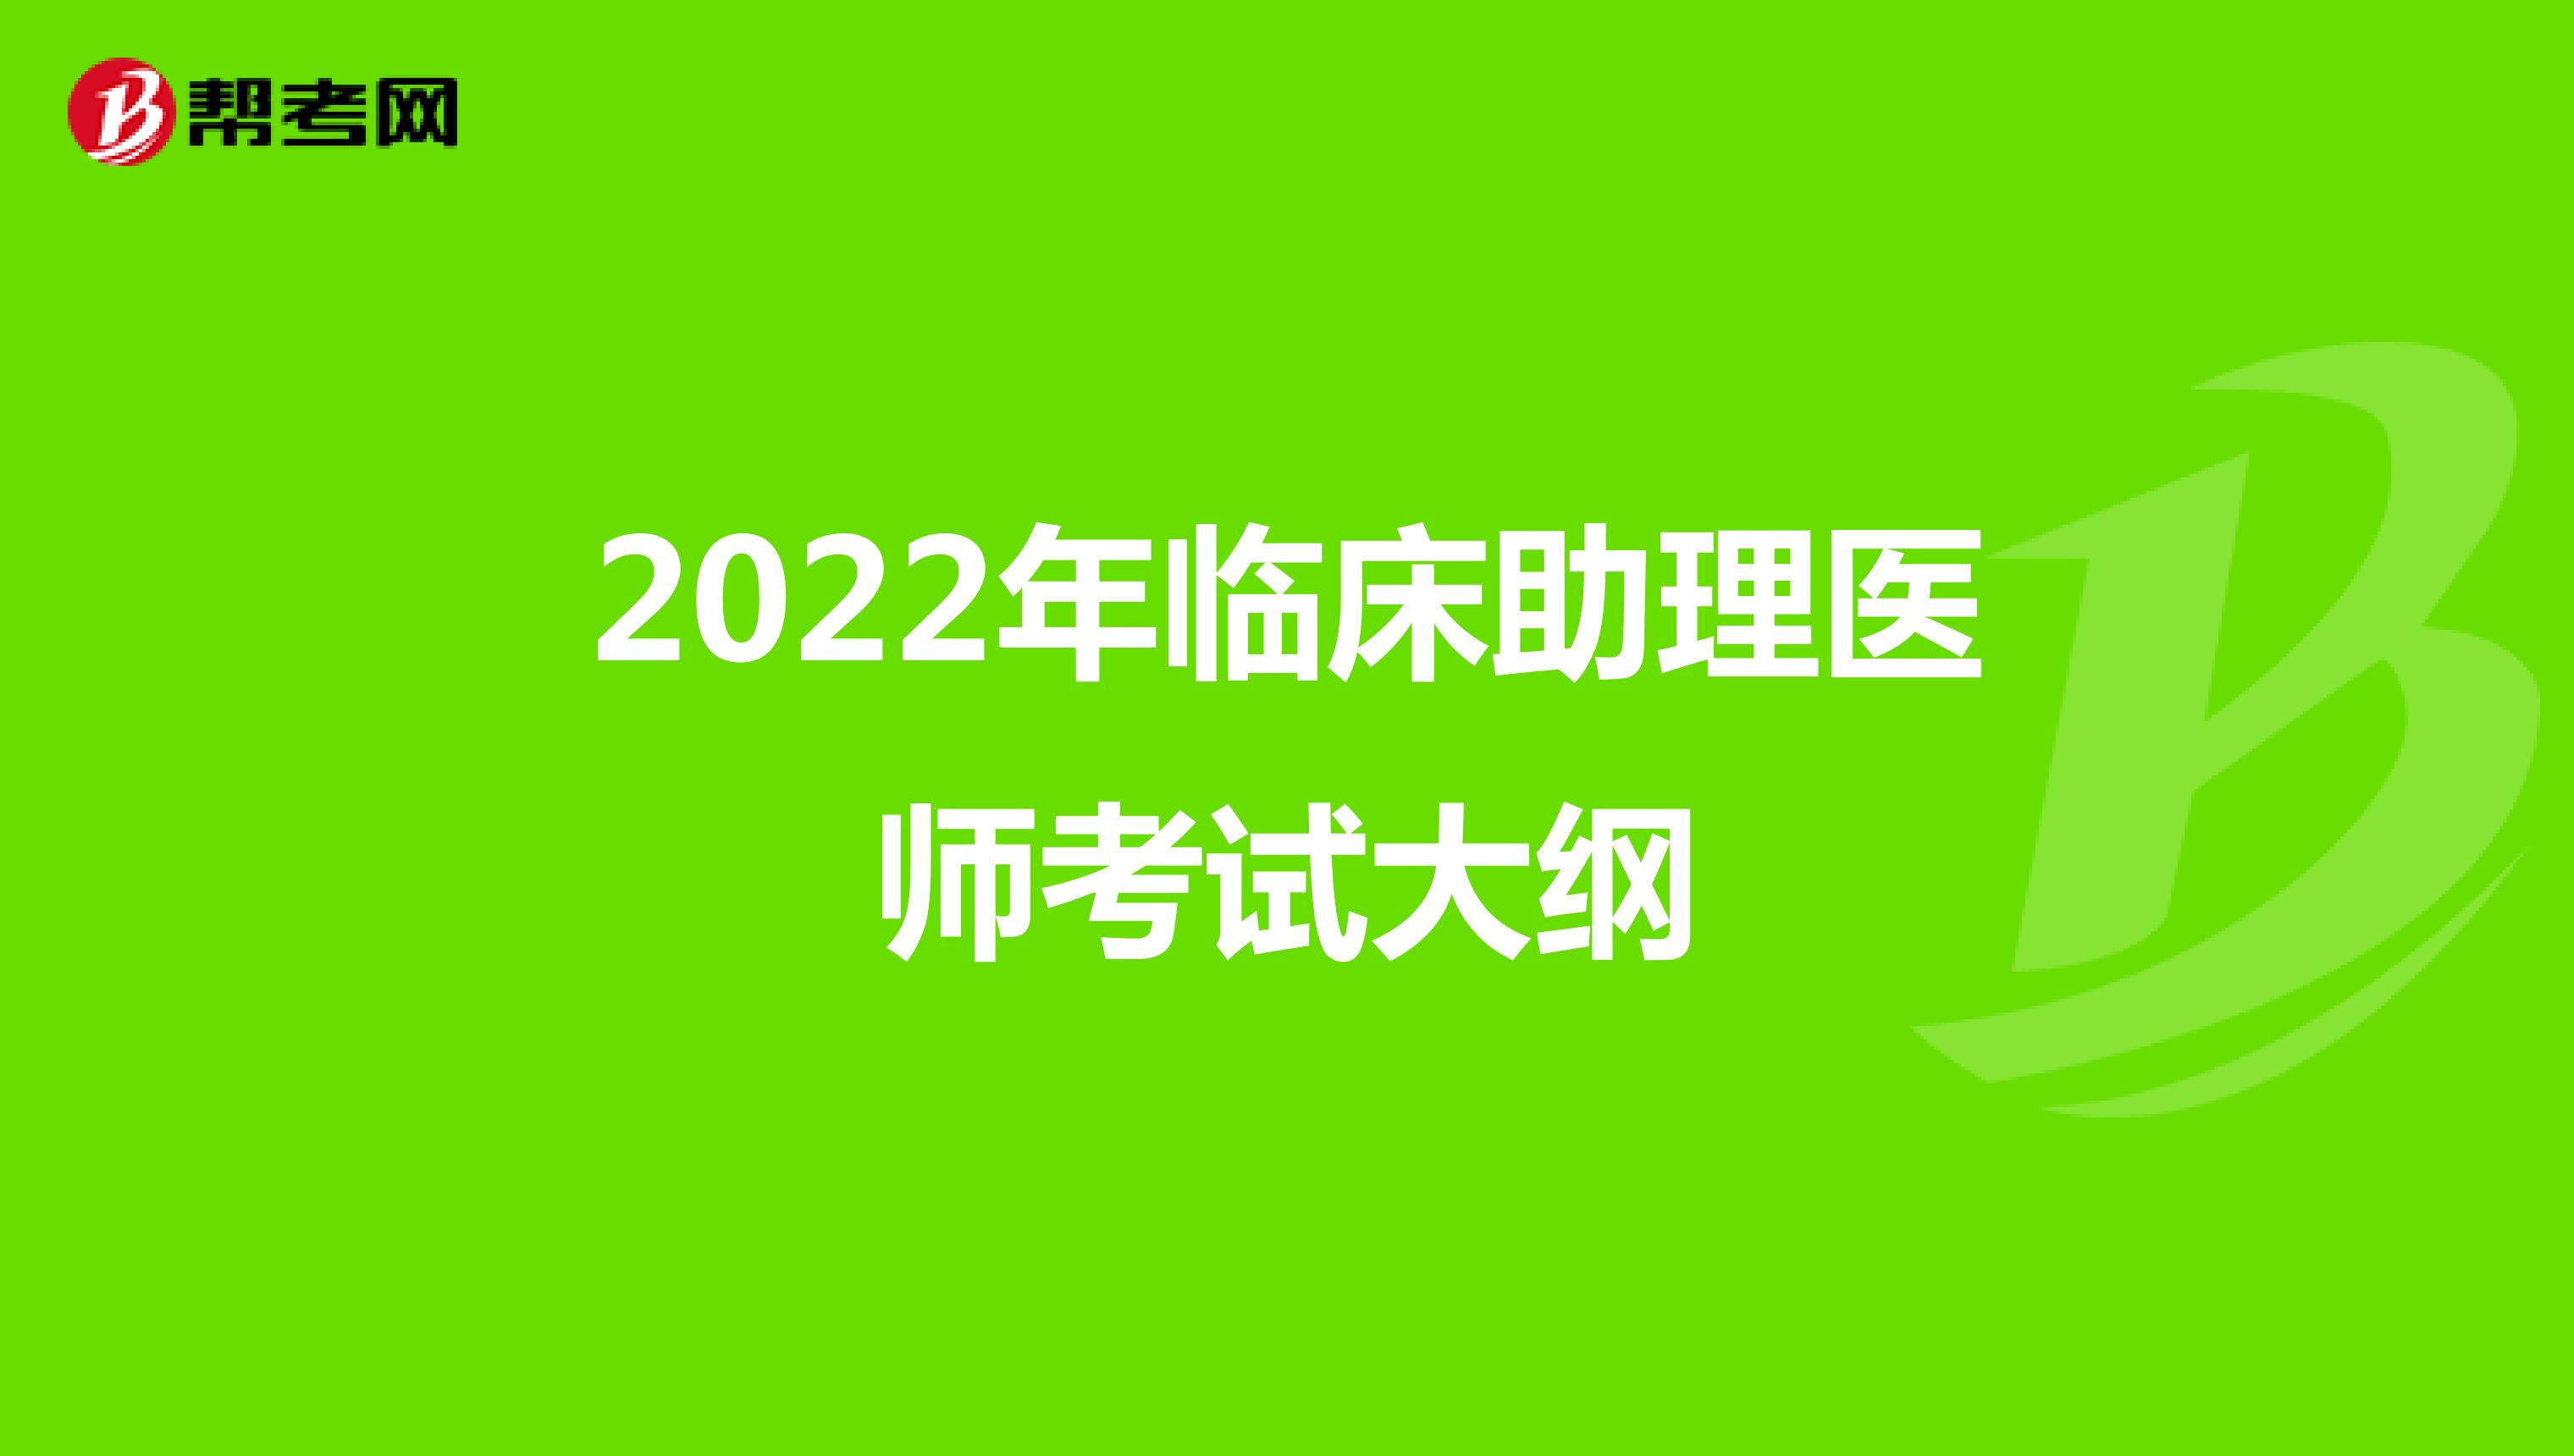 2022年临床助理医师考试大纲